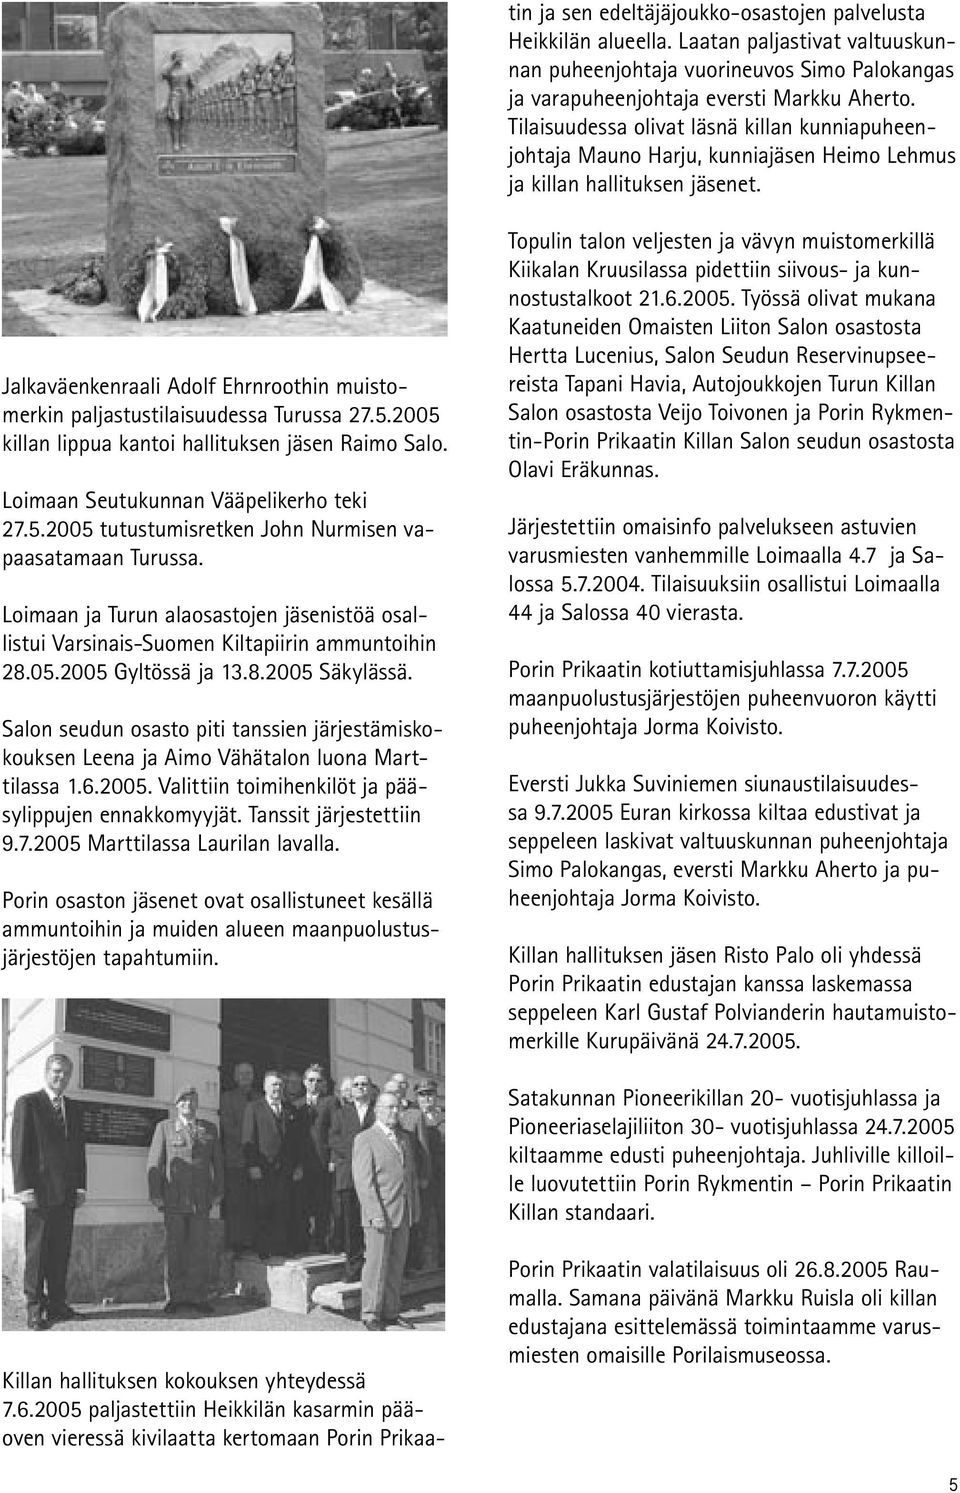 Jalkaväenkenraali Adolf Ehrnroothin muistomerkin paljastustilaisuudessa Turussa 27.5.2005 killan lippua kantoi hallituksen jäsen Raimo Salo. Loimaan Seutukunnan Vääpelikerho teki 27.5.2005 tutustumisretken John Nurmisen vapaasatamaan Turussa.